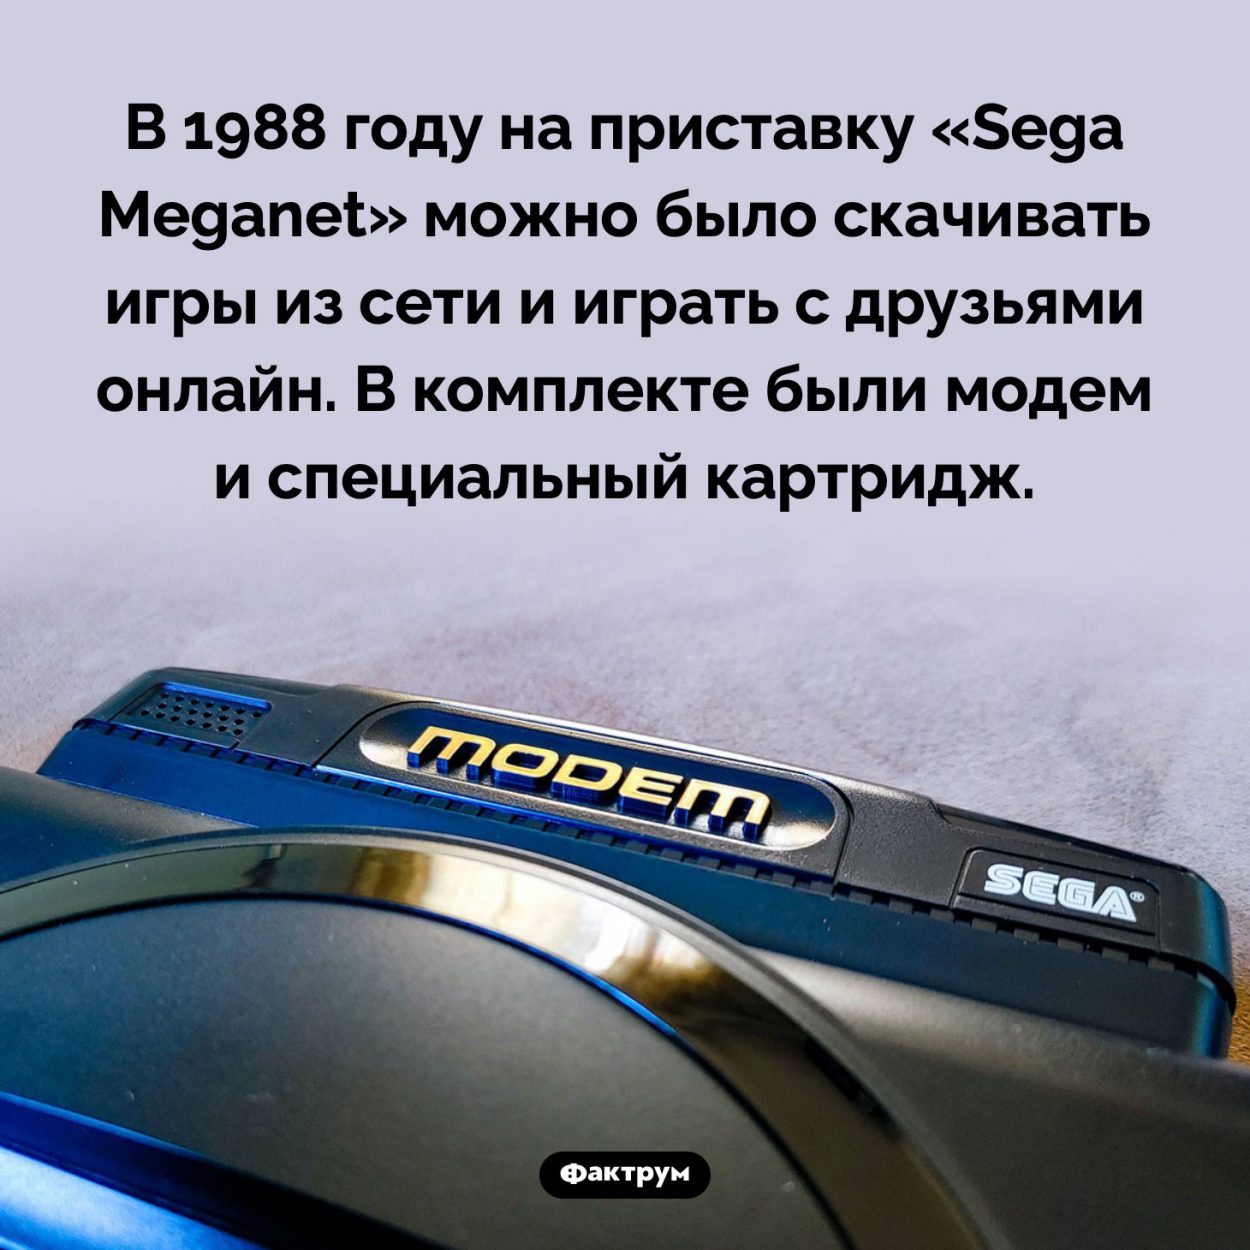 Как играли по сети в 1988 году. В 1988 году на приставку «Sega Meganet» можно было скачивать игры из сети и играть с друзьями онлайн. В комплекте были модем и специальный картридж.